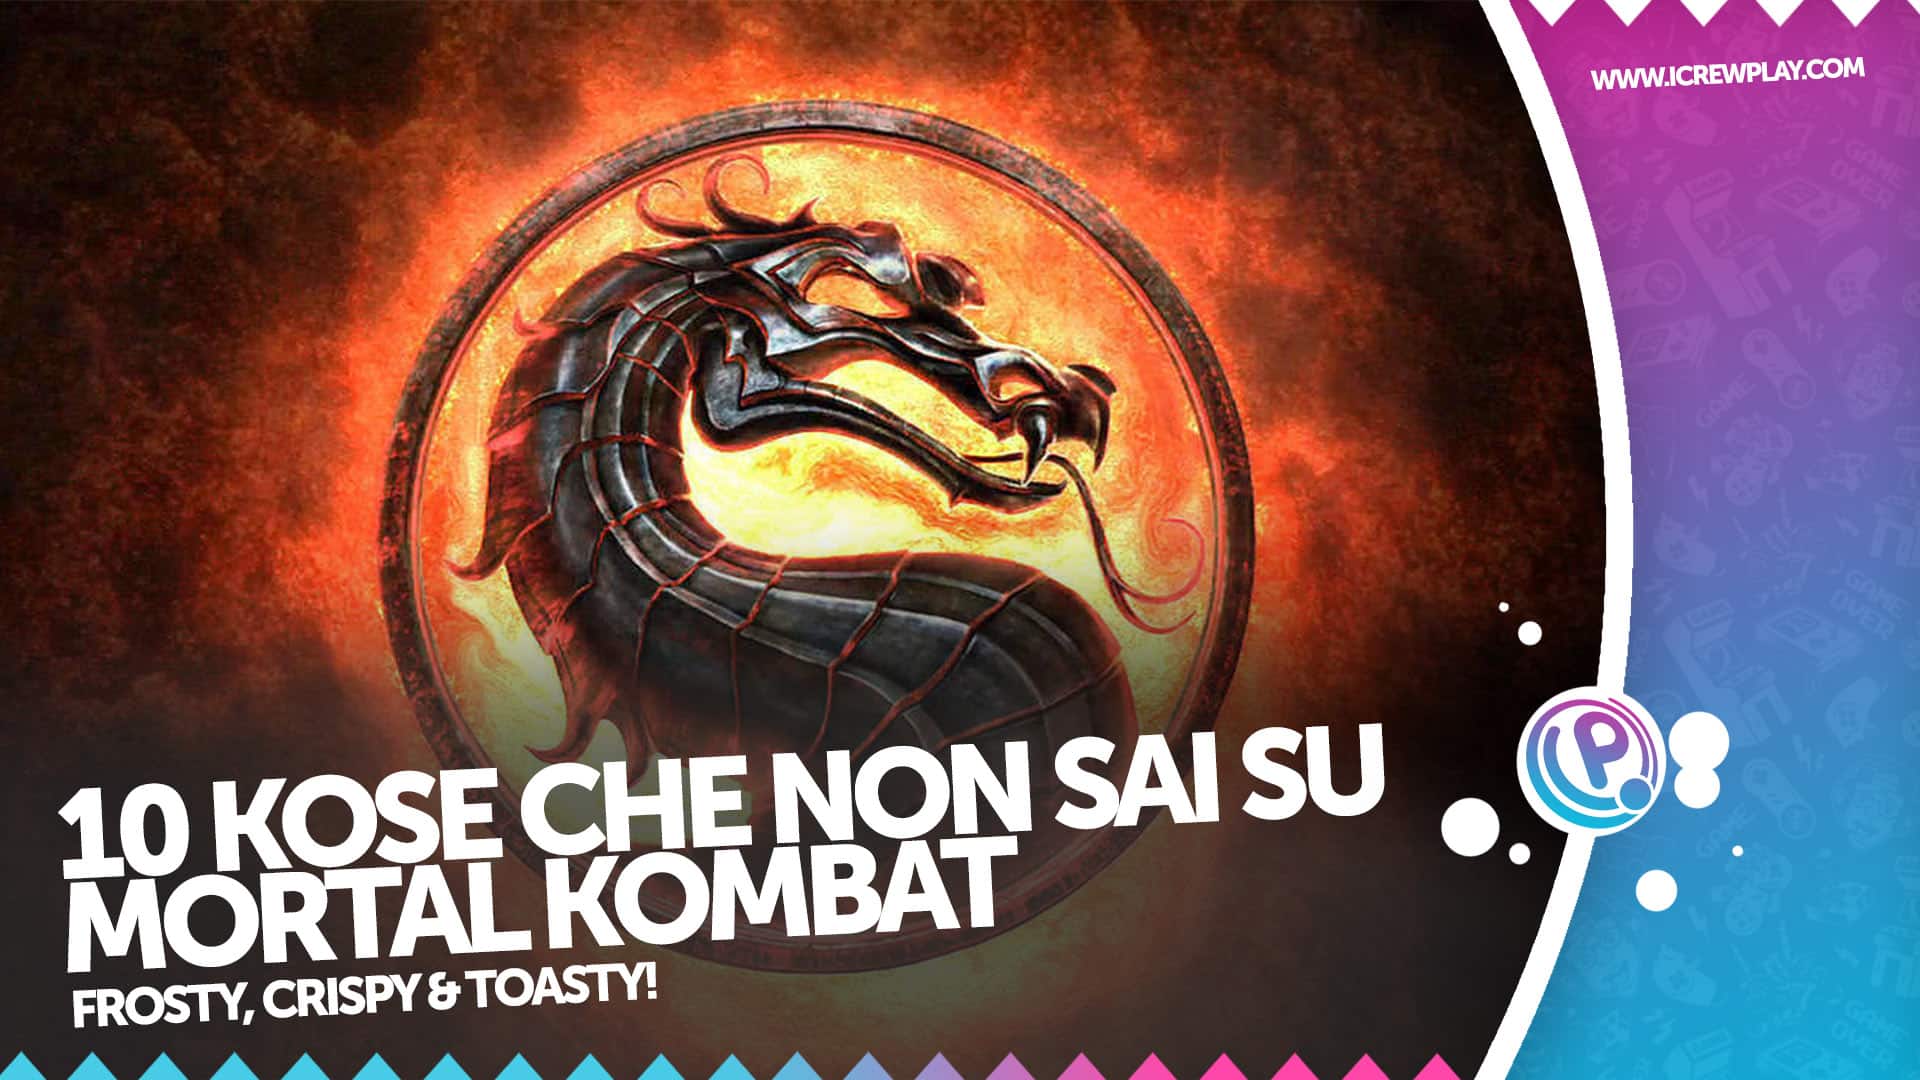 10 cose che forse non sai su Mortal Kombat 2